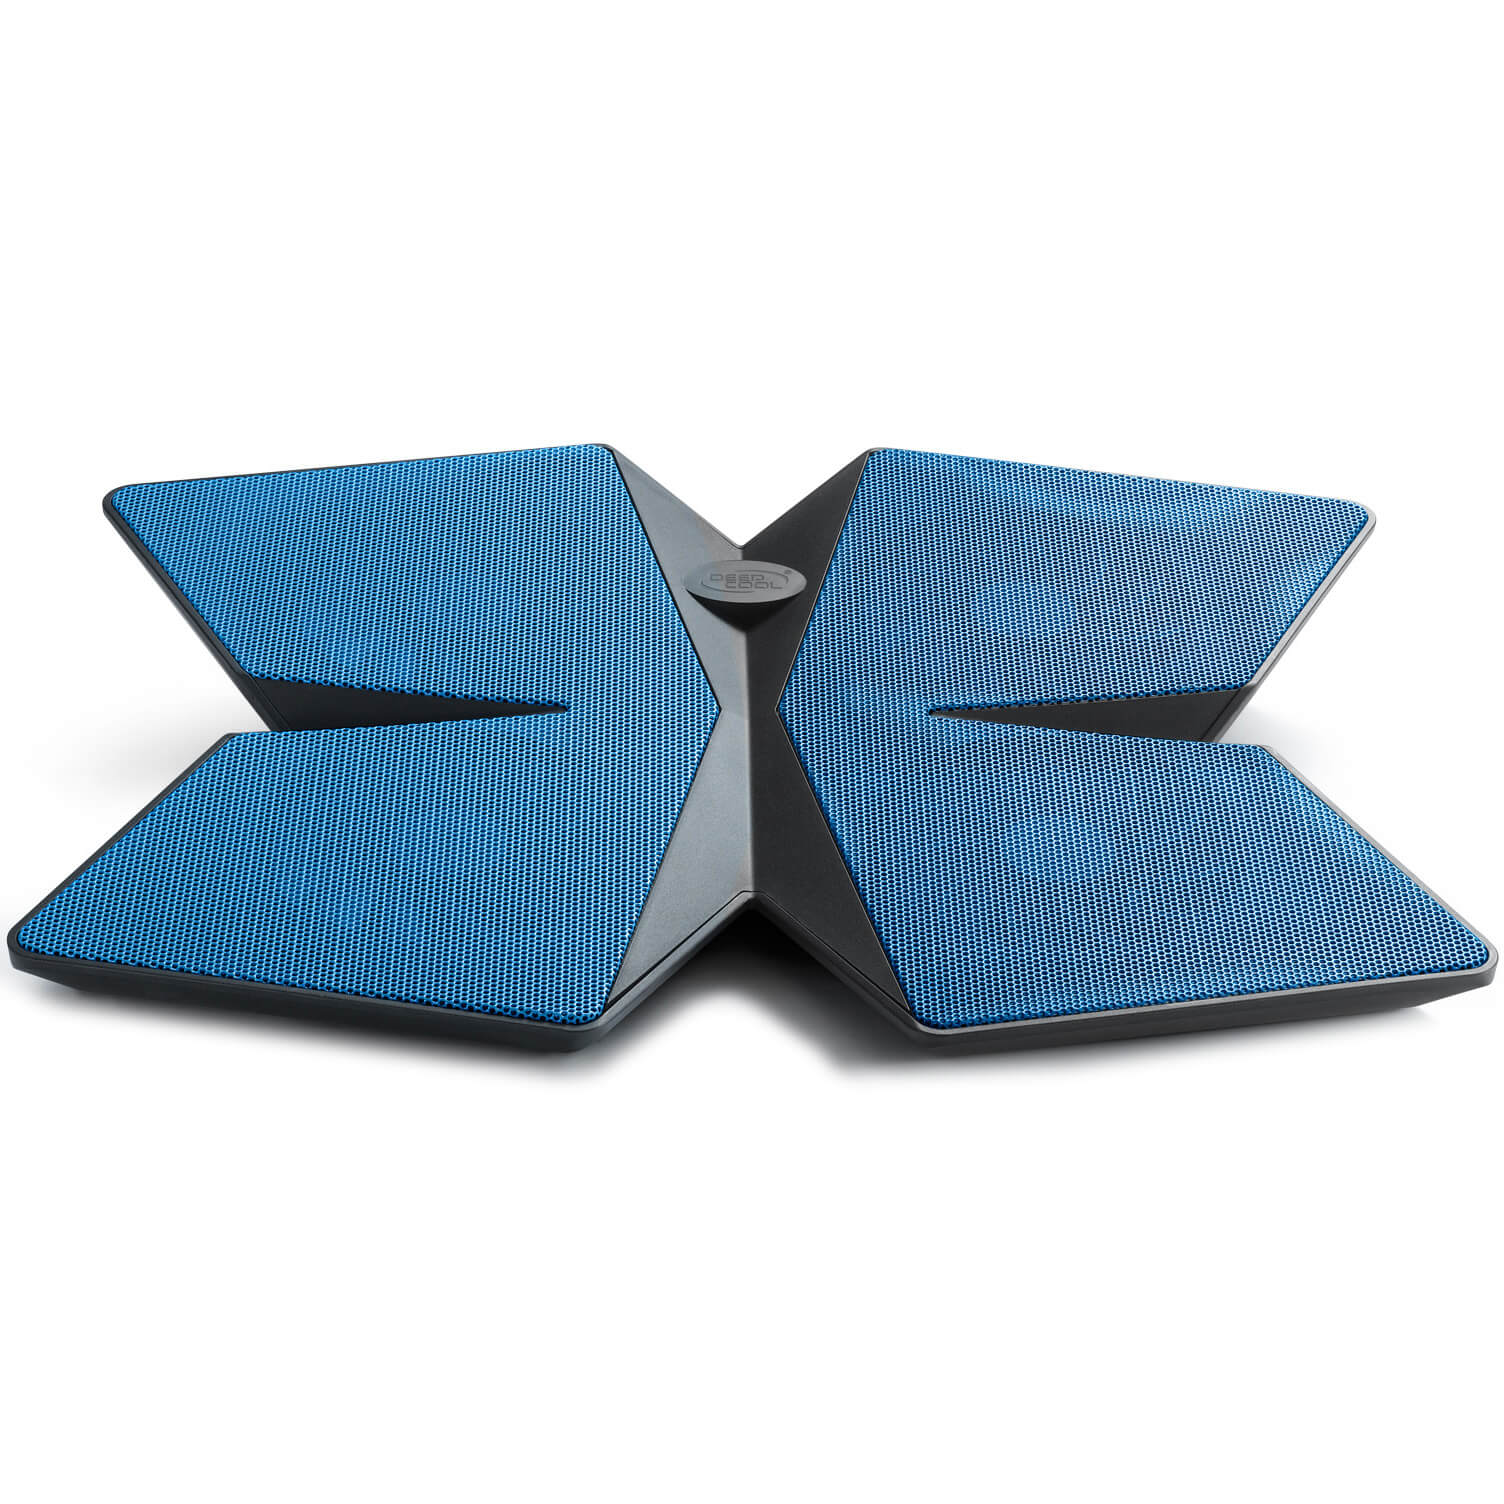  Stand/Cooler Deepcool Multi Core x4 pentru notebook 15.6", Albastru 